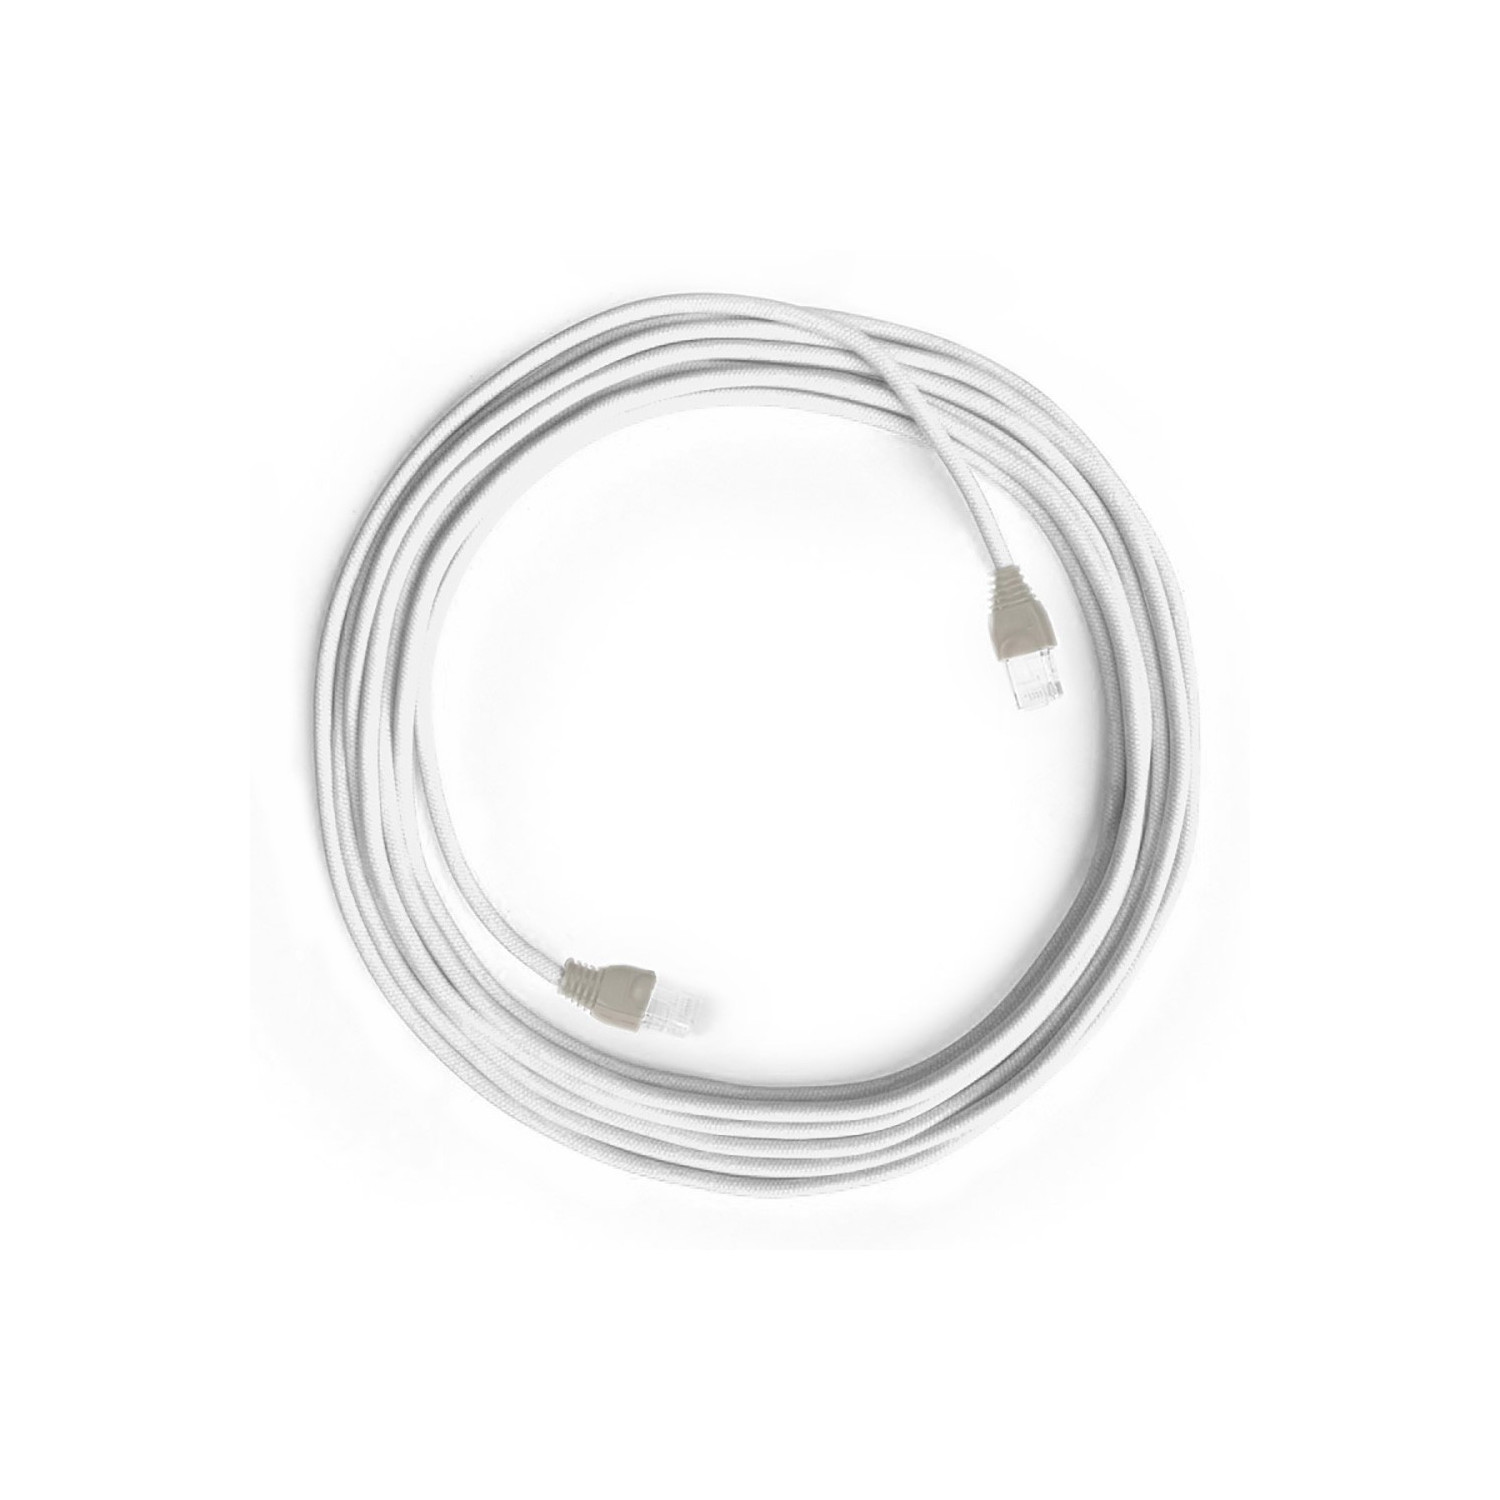 Cavo Lan Ethernet Cat 5e con connettori RJ45 - RC01 Cotone Bianco